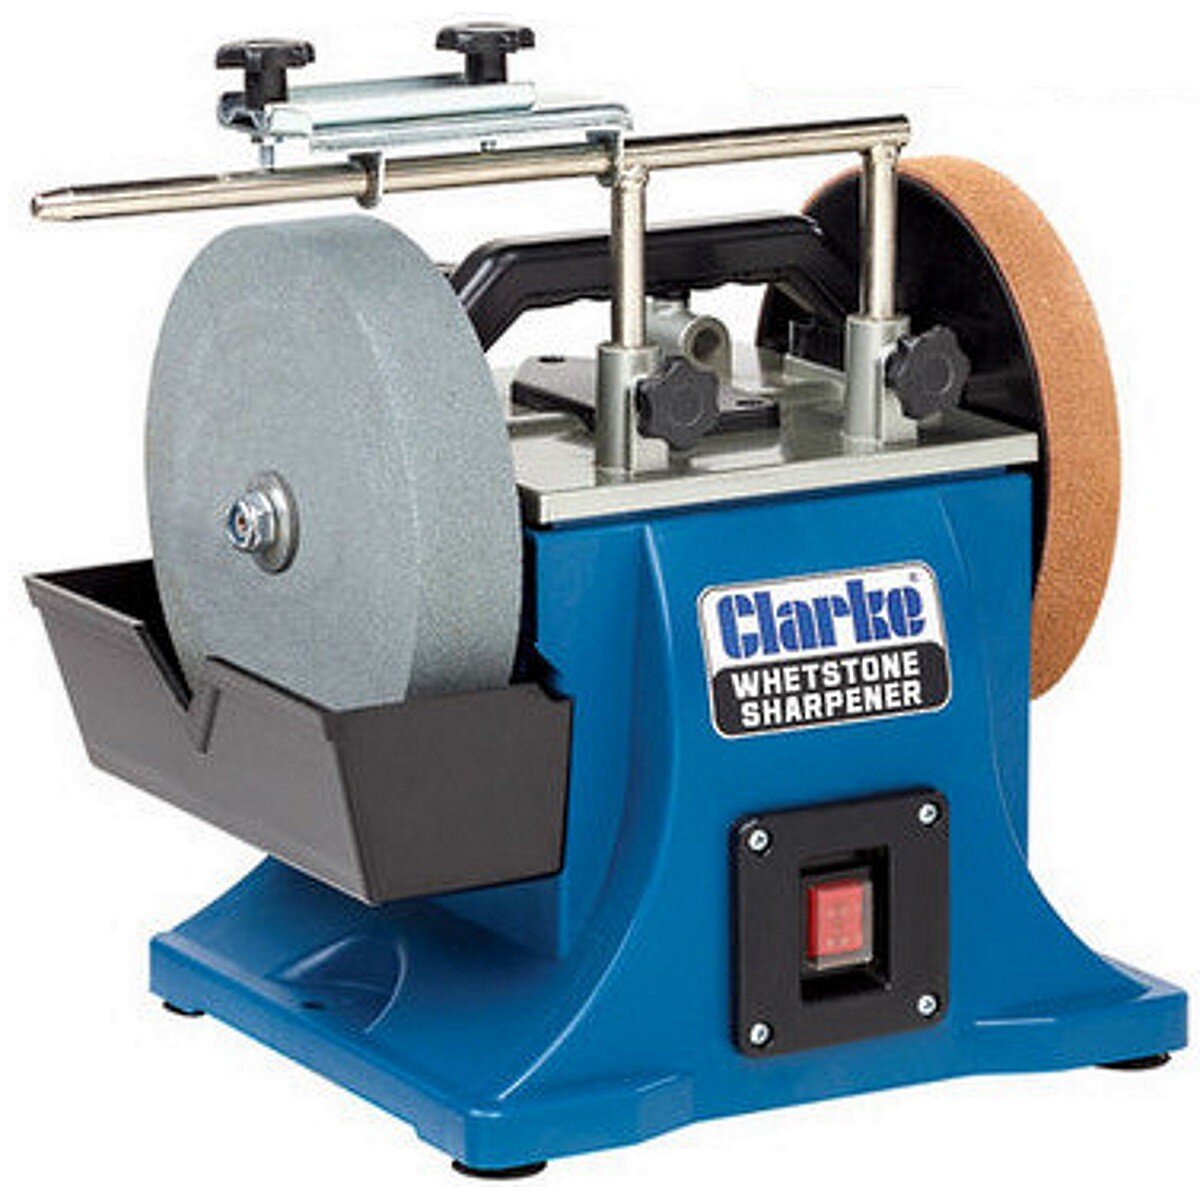 Clarke CWS200B 200mm Whetstone Sharpener 230v 6500531